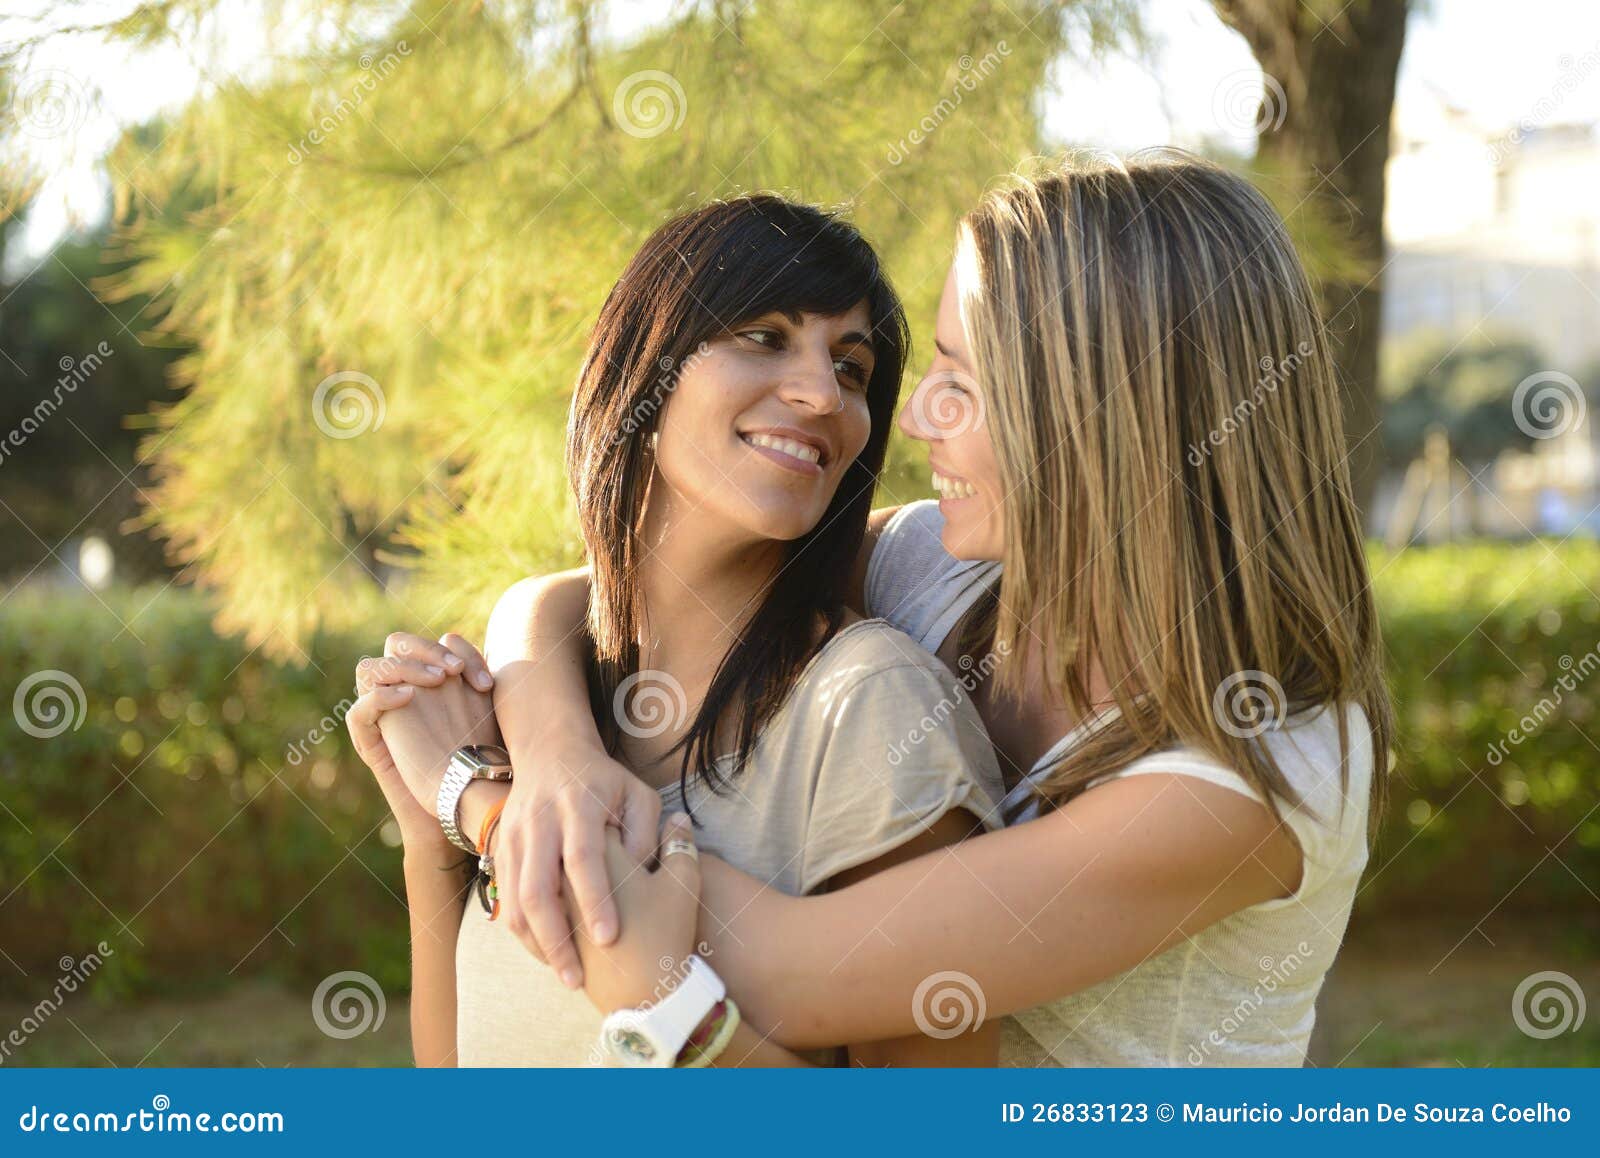 女同性恋的夫妇 库存图片. 图片 包括有 女朋友, 乐趣, 年轻, 相当, 青少年, 女孩, 拥抱, 可爱 - 35987645